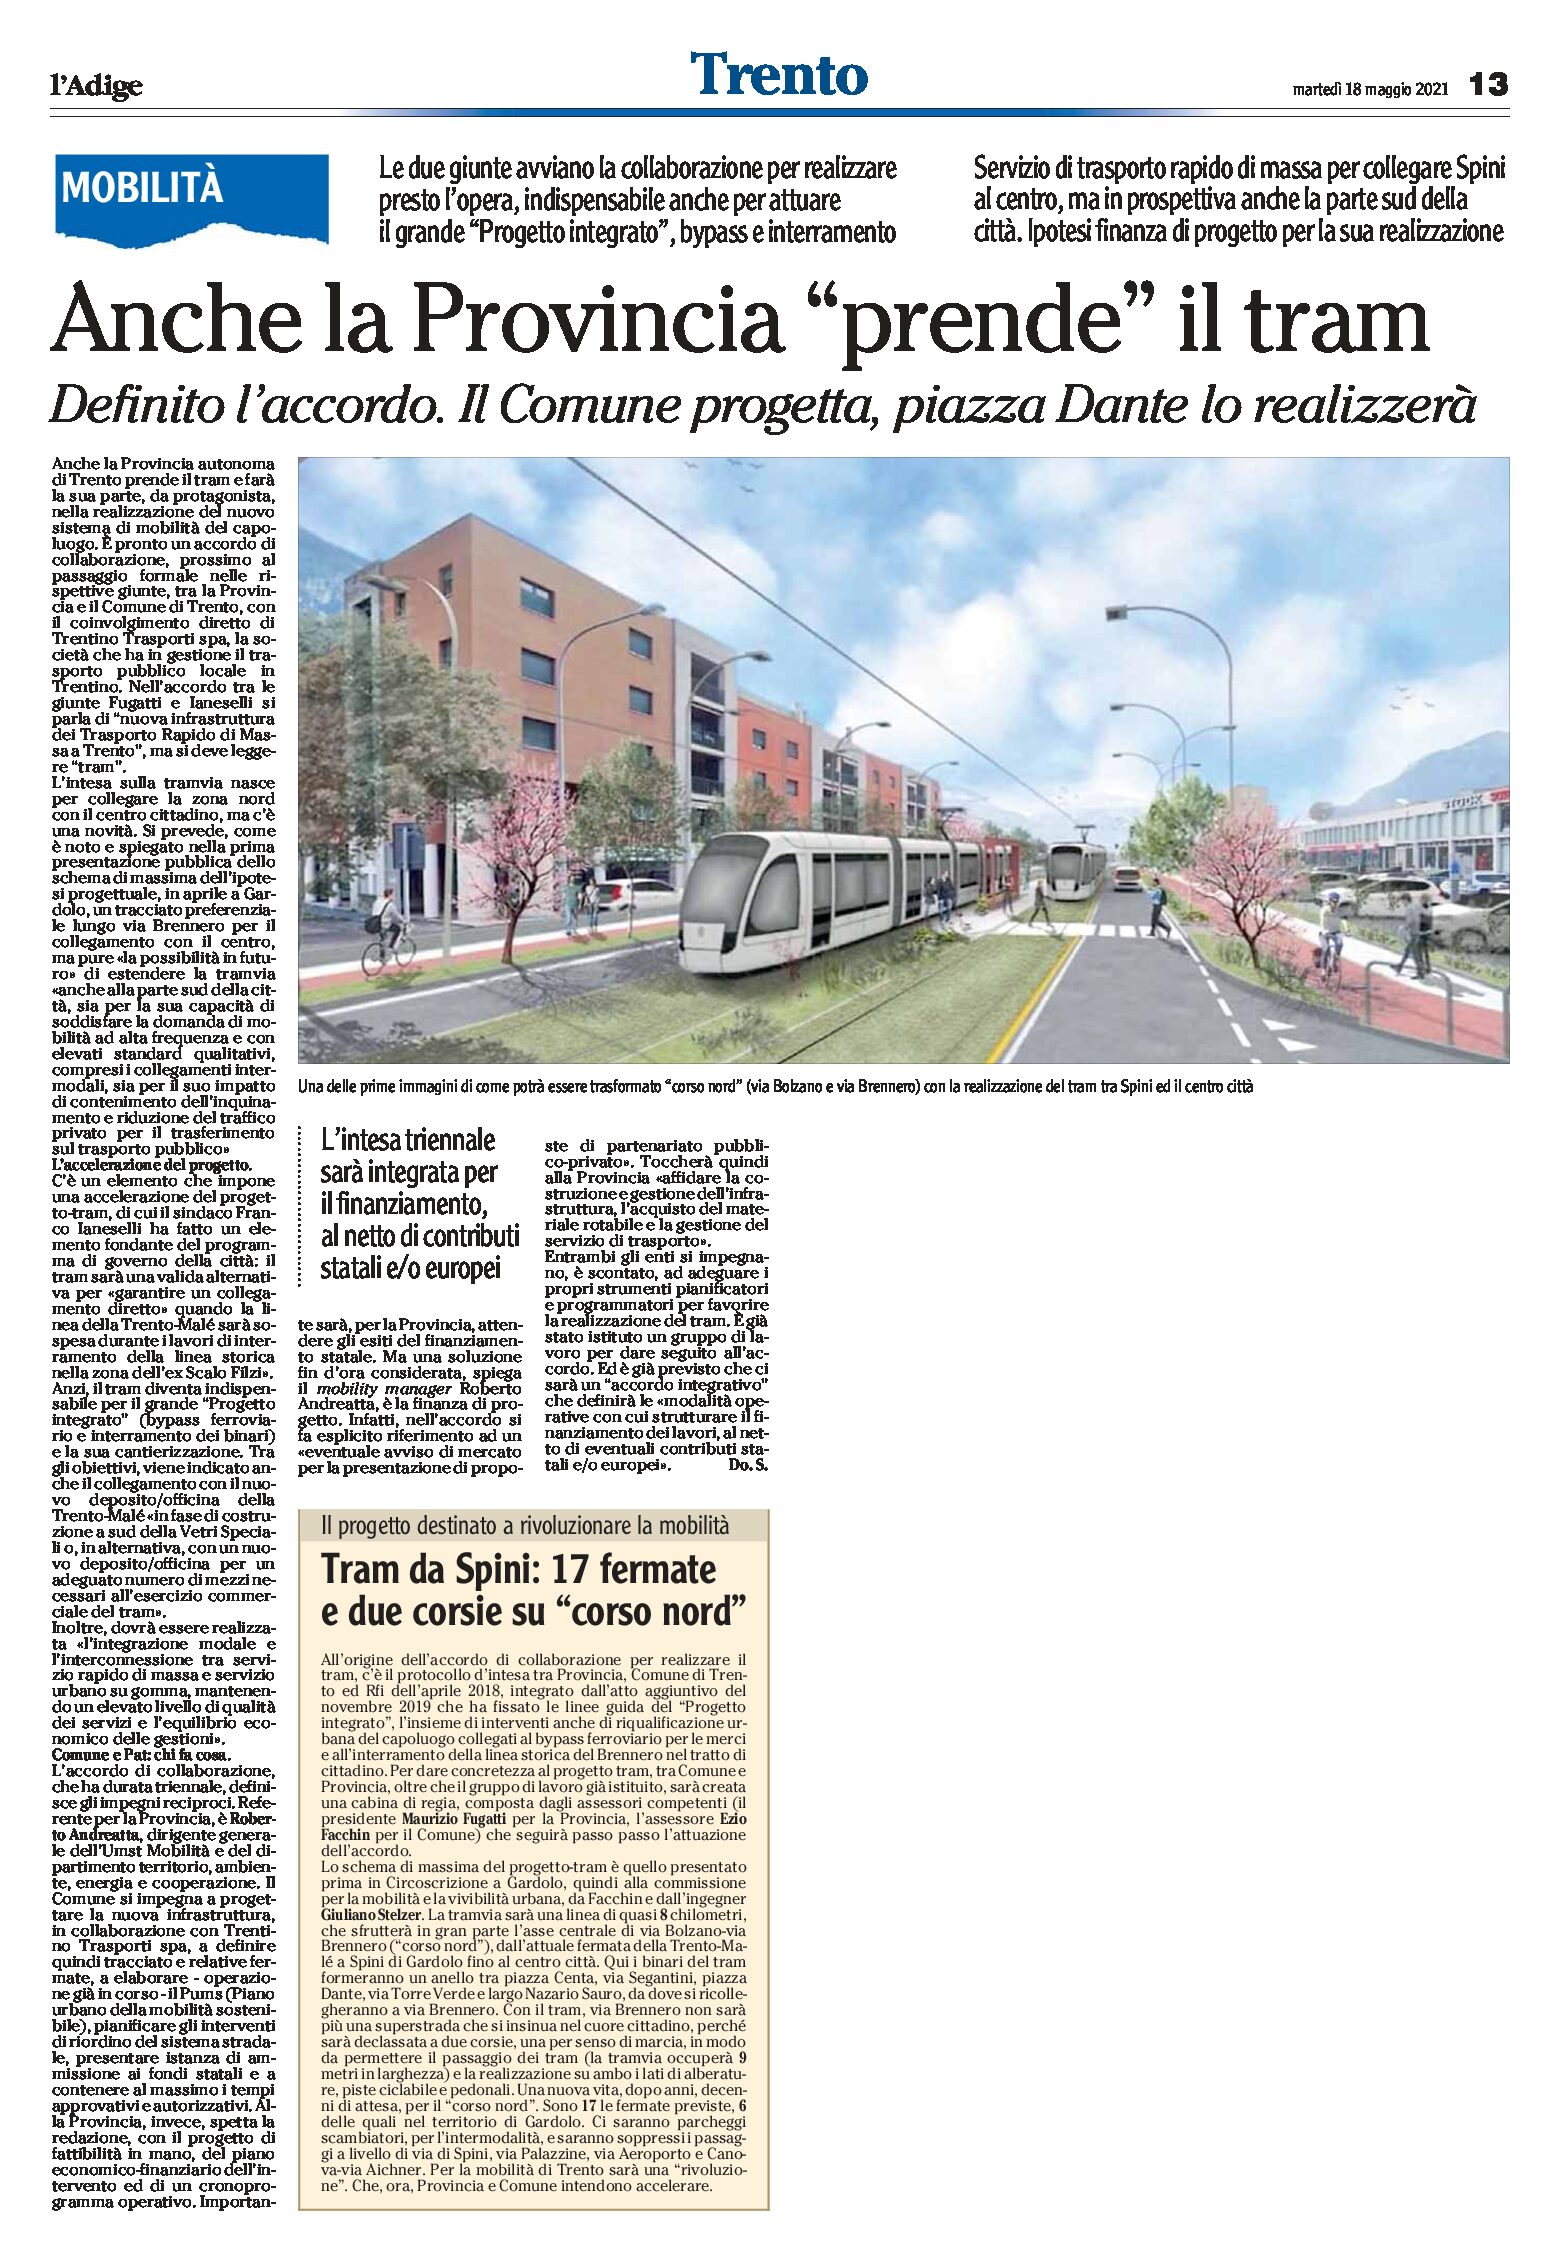 Trento, tram: definito l’accordo tra Comune e Provincia